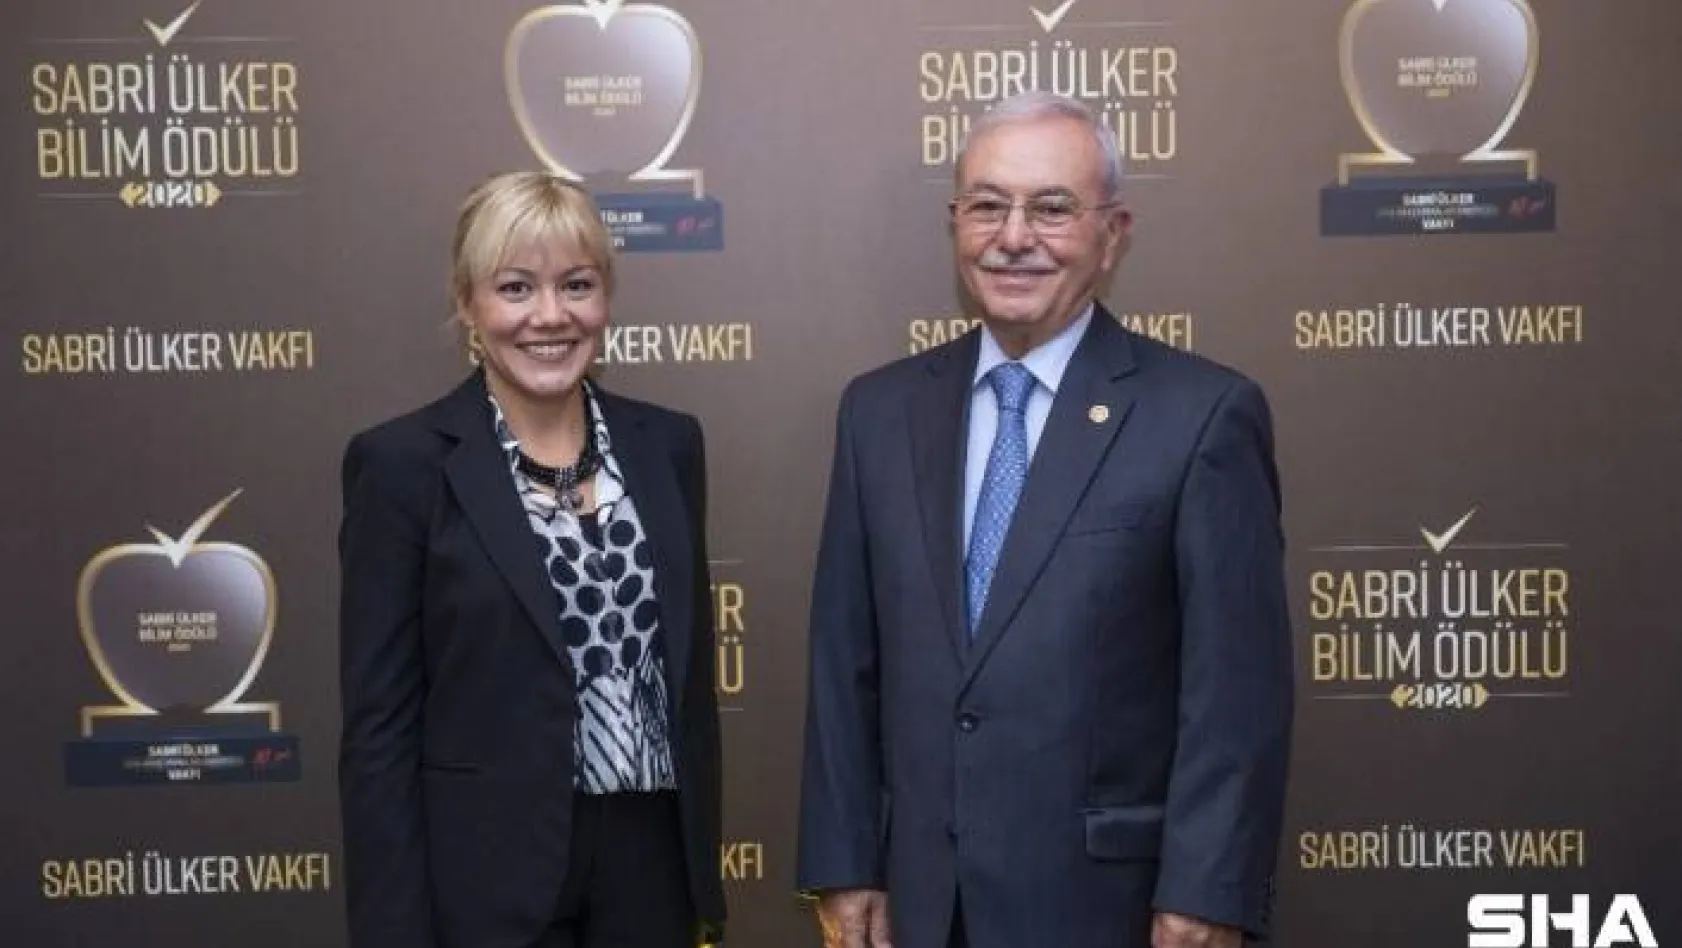 Sabri Ülker Bilim Ödülü, Türk bilim insanı Doç. Dr. Elçin Ünal'a verildi